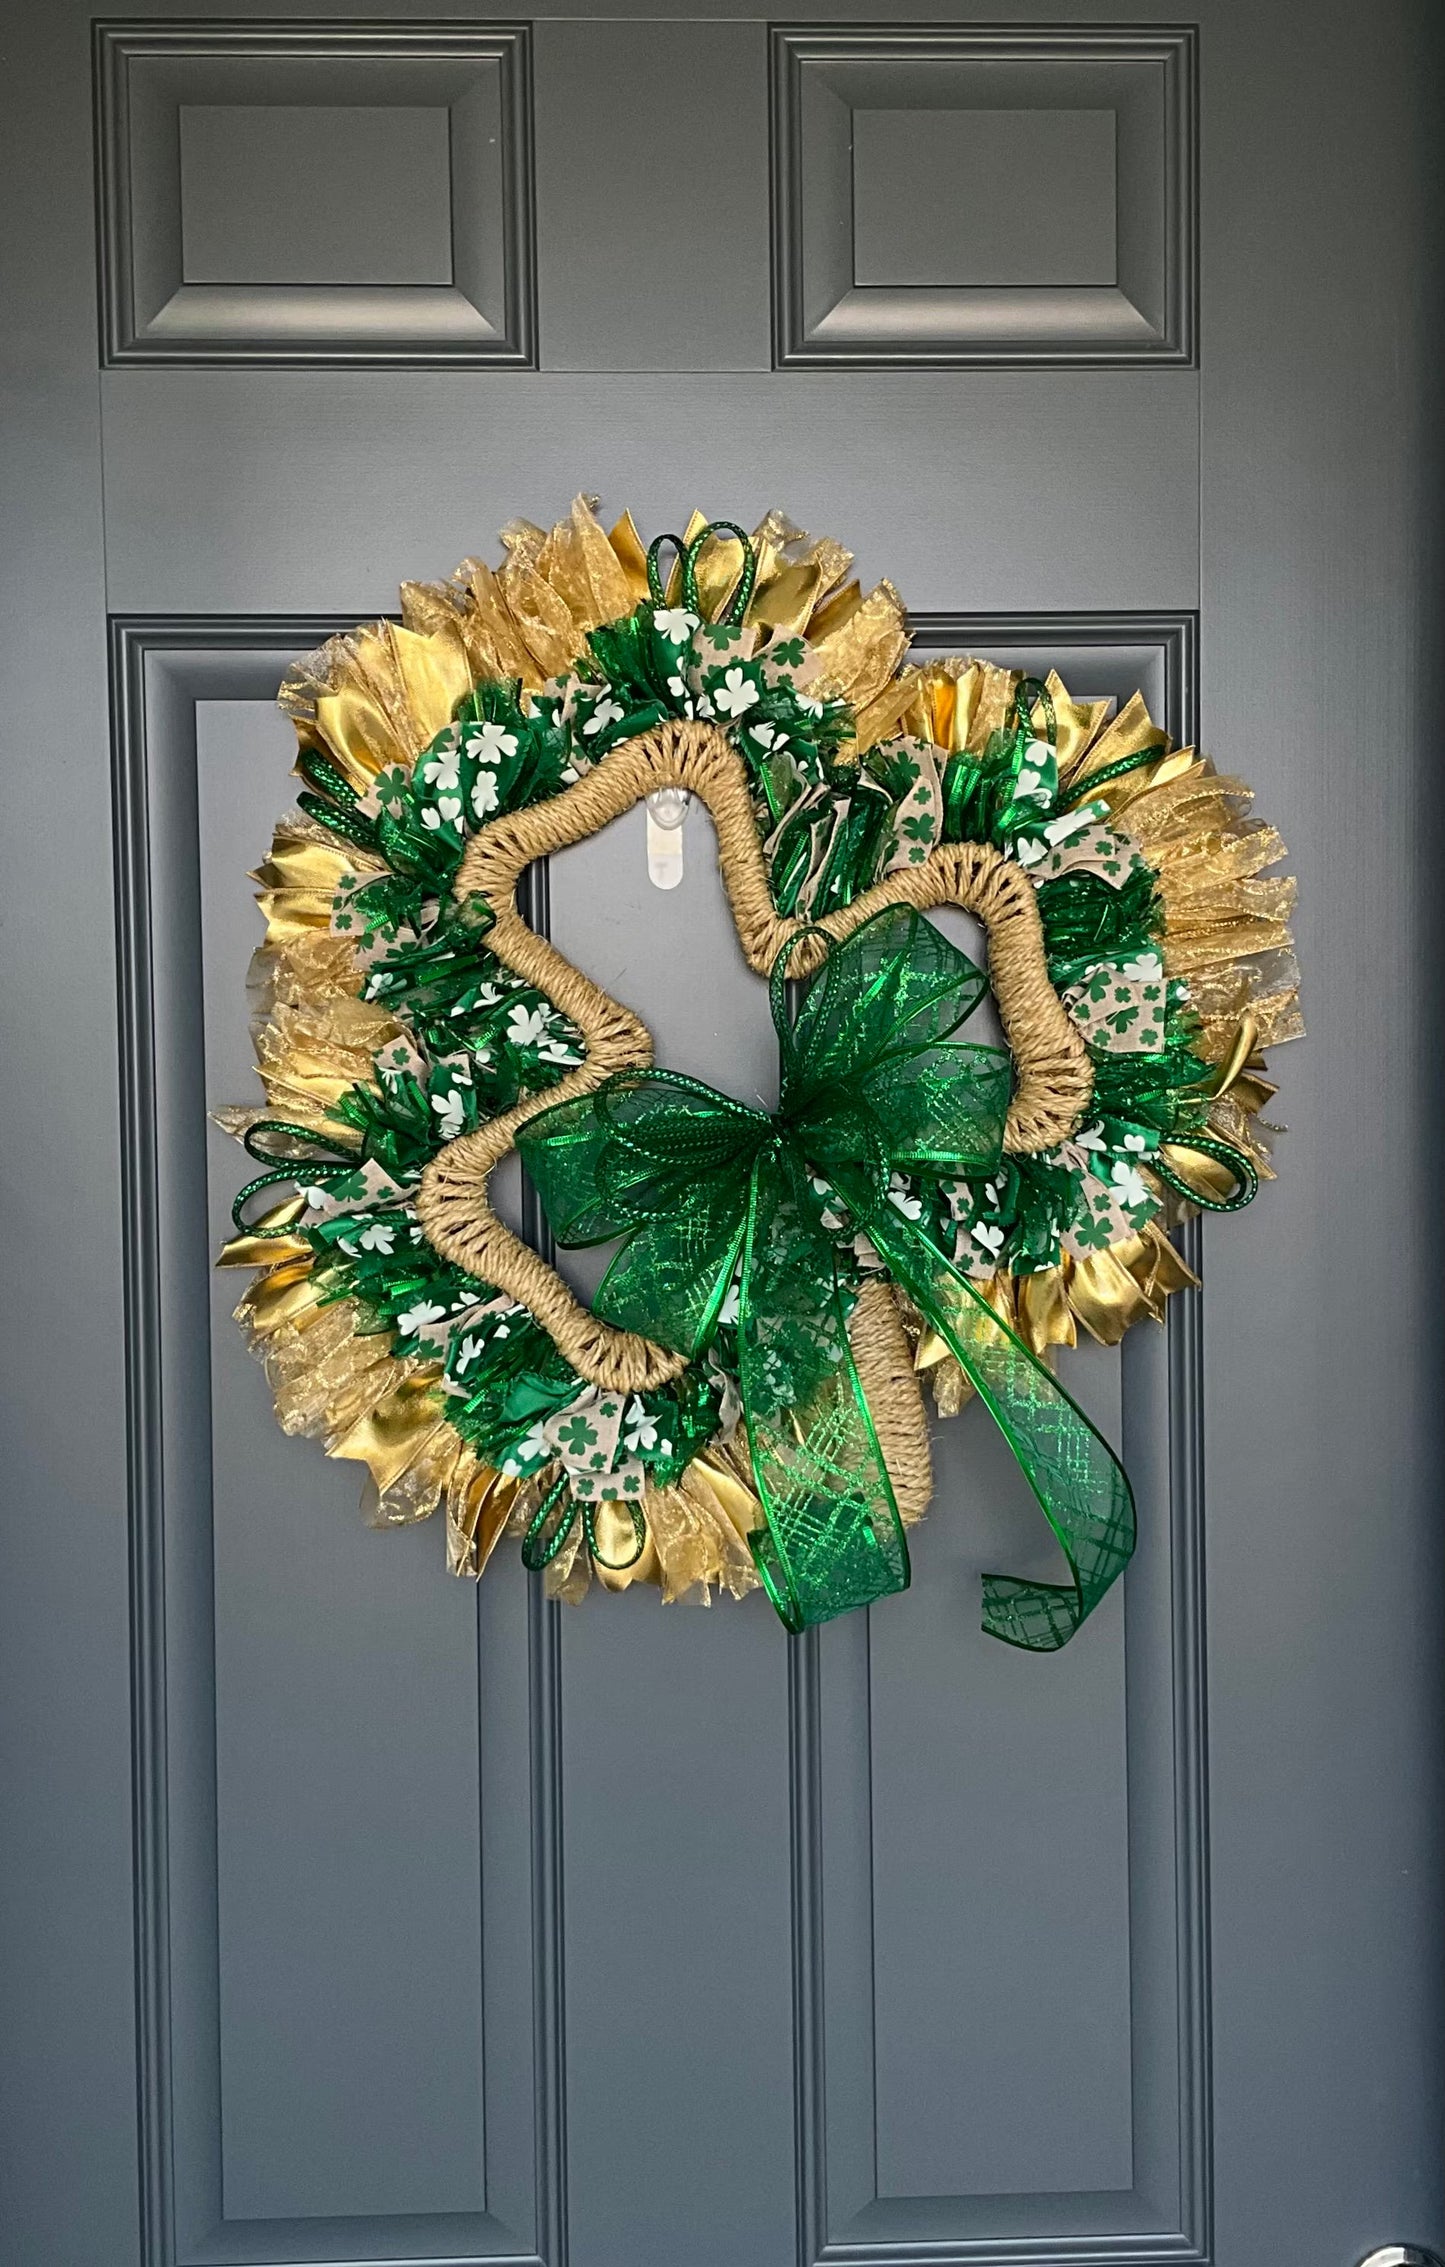 St. Patrick’s Day Wreath for front door, Irish Wreath, Front Door Decor, Green Wreath, Shamrock Wreath, Clover Wreath